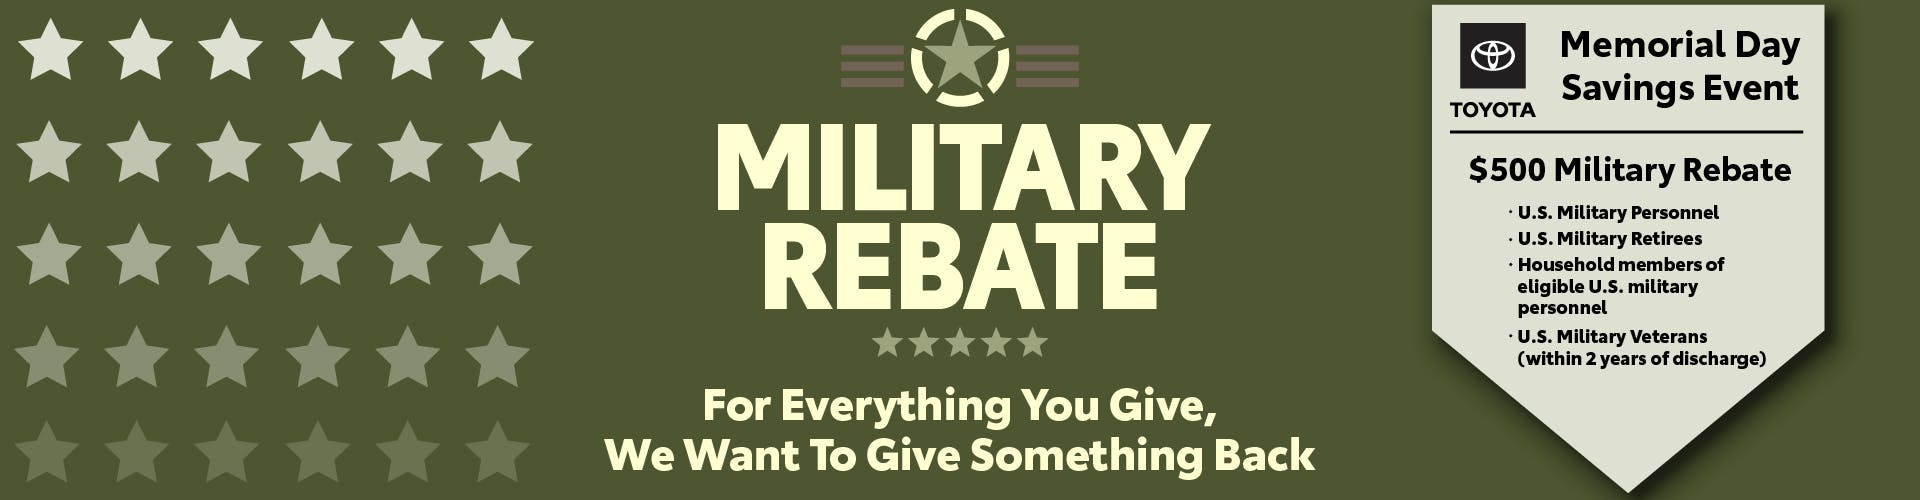 Military Rebate